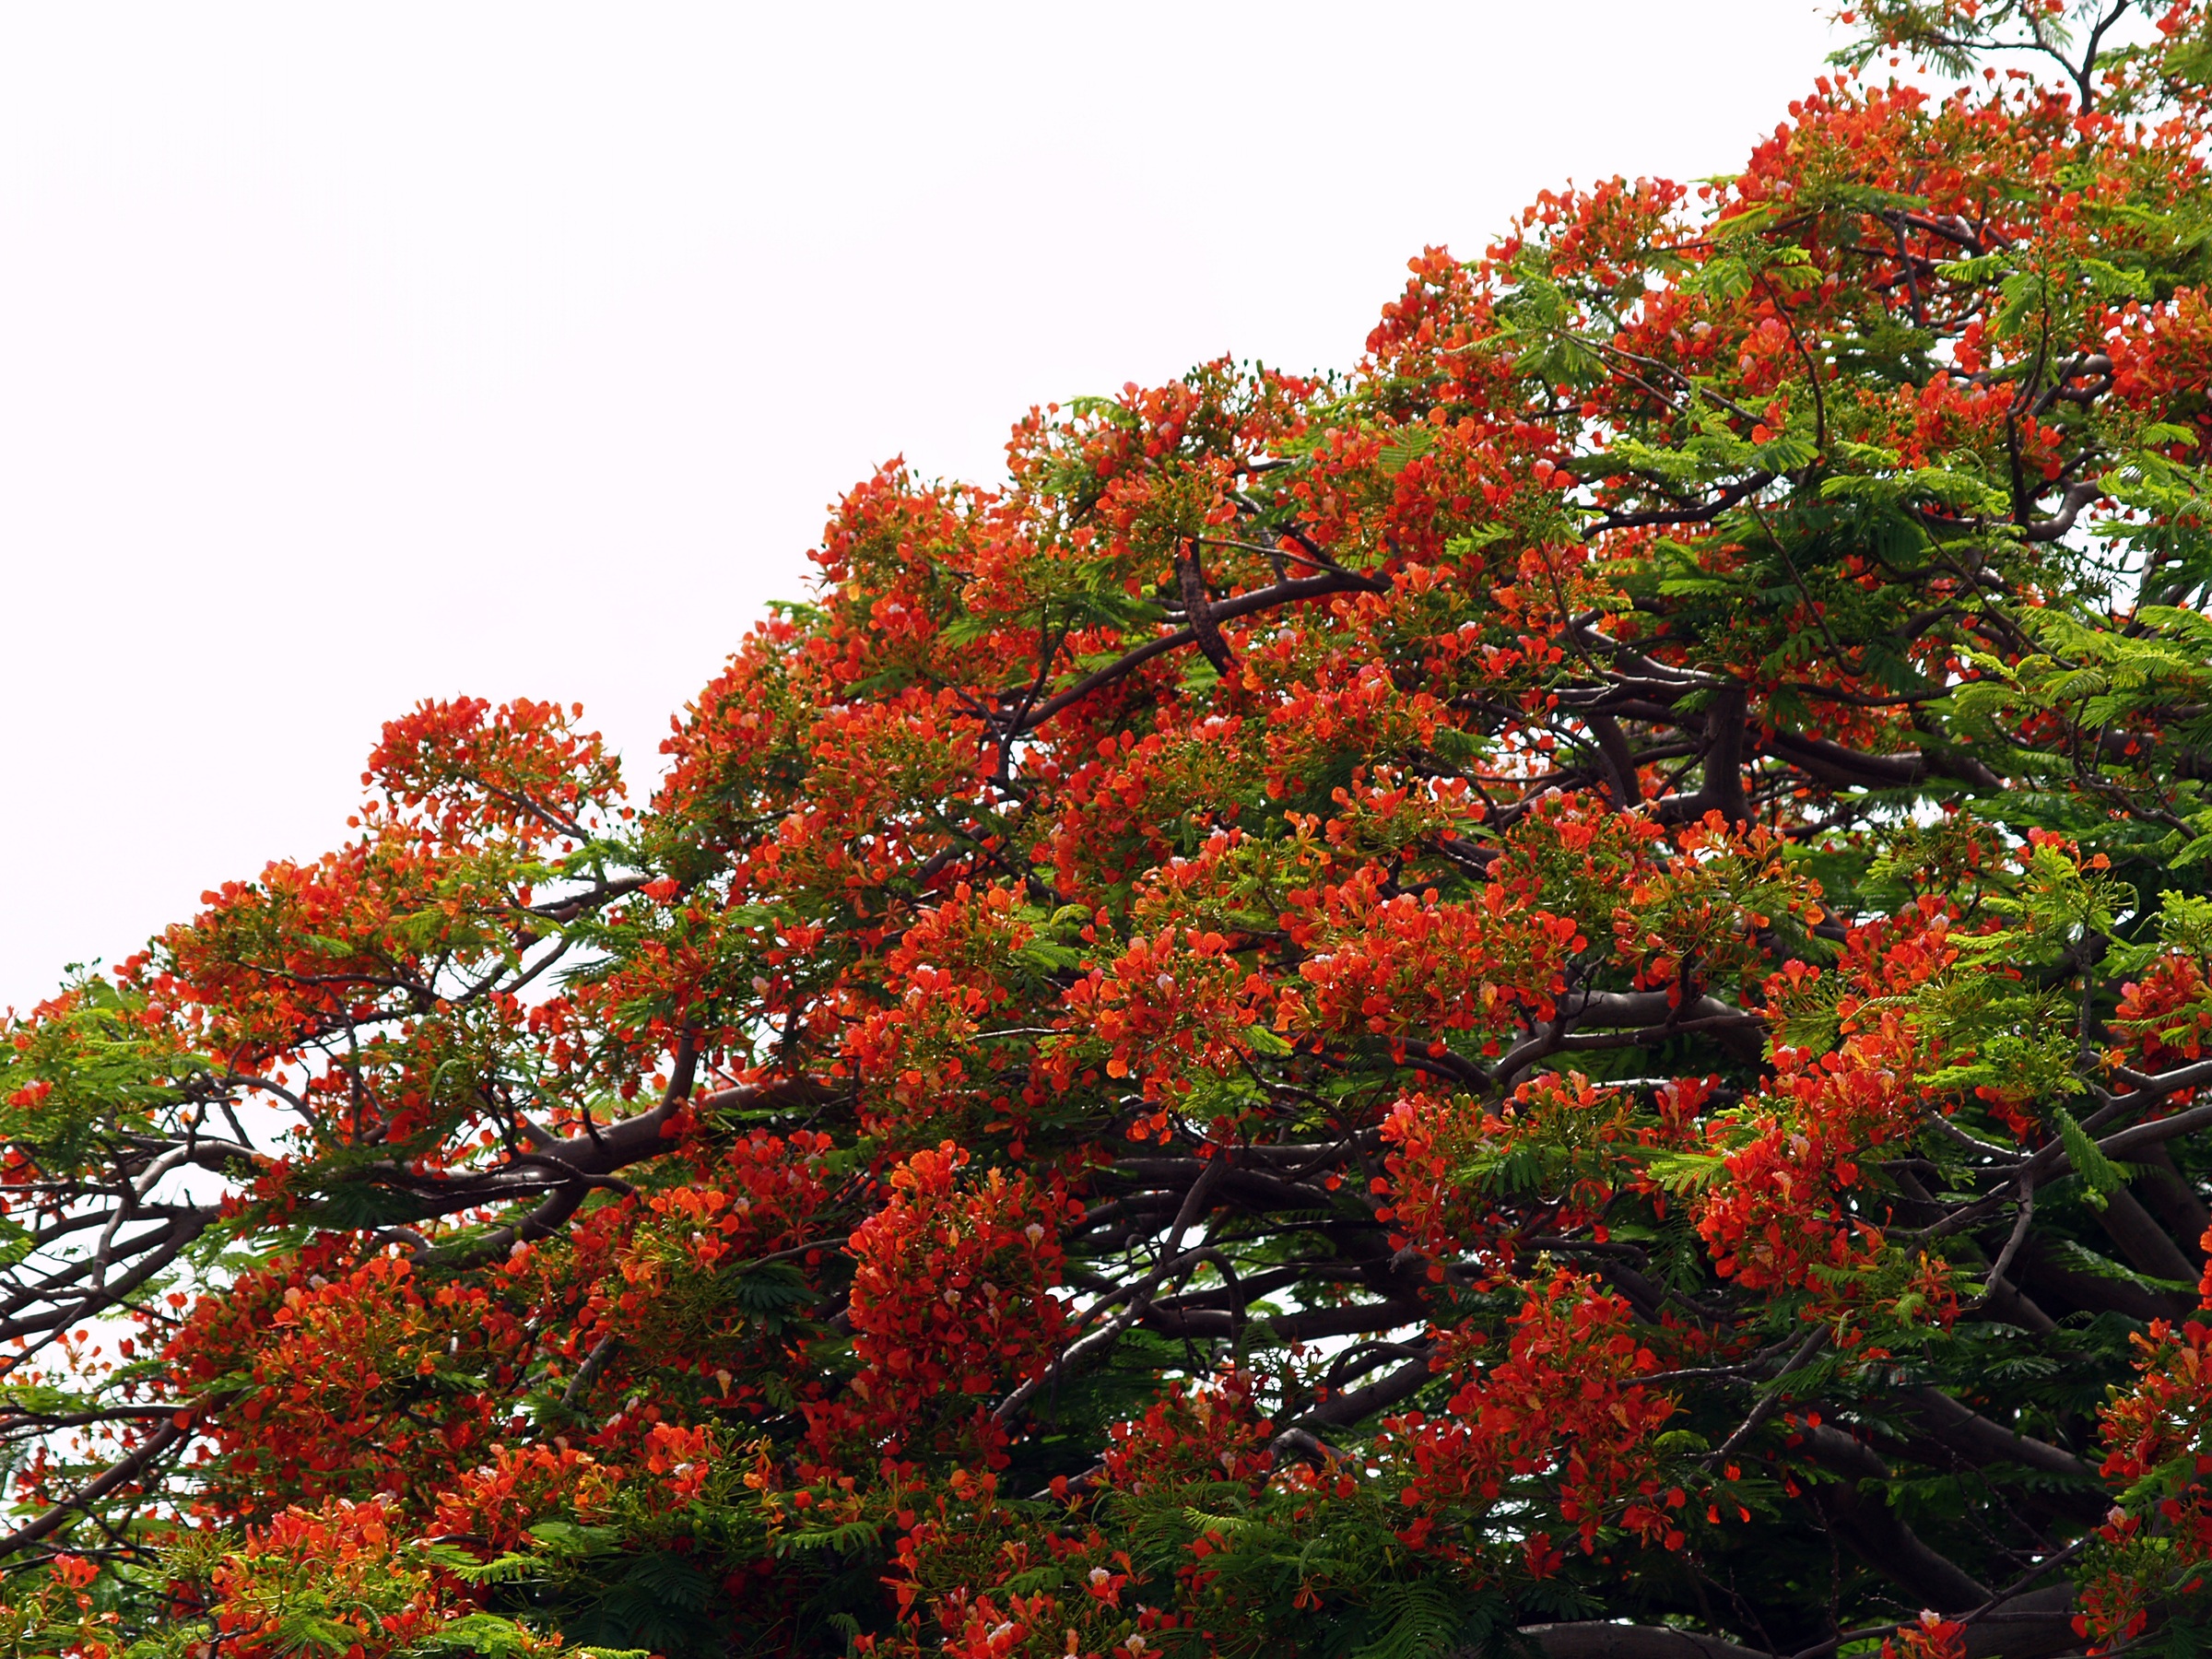 дерево с красными цветами фото и названия